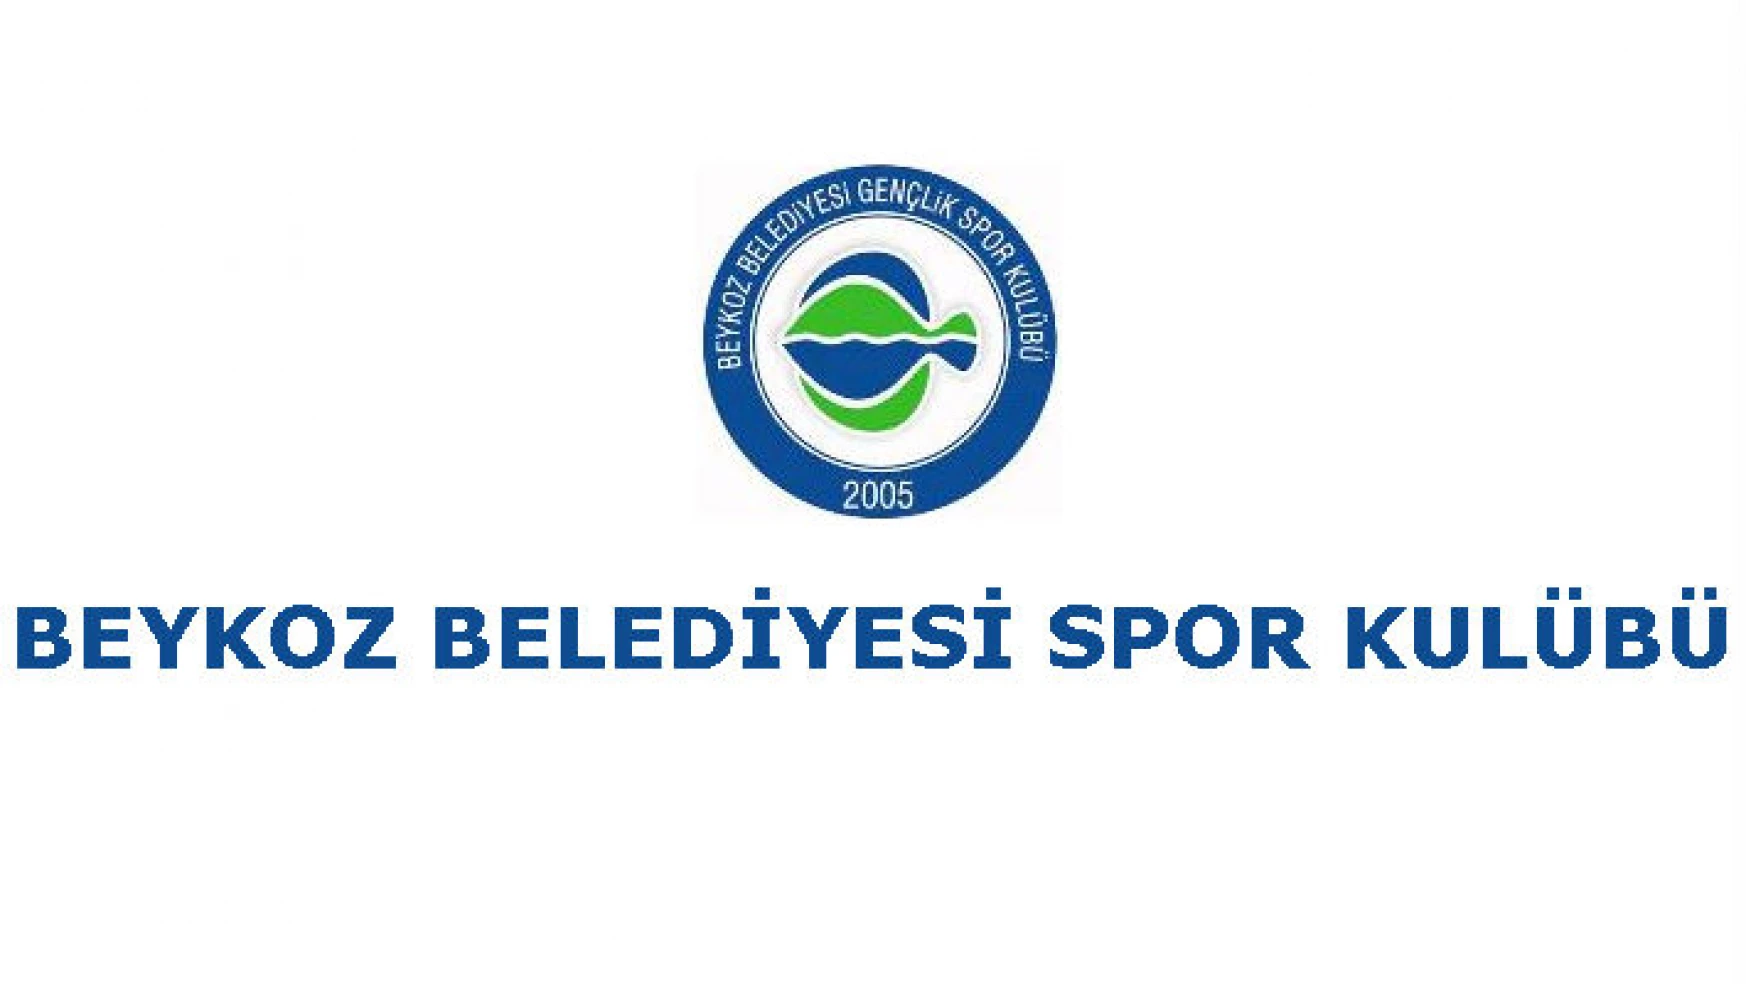 Beykoz Belediyesi’nin rakibi Kosova’dan